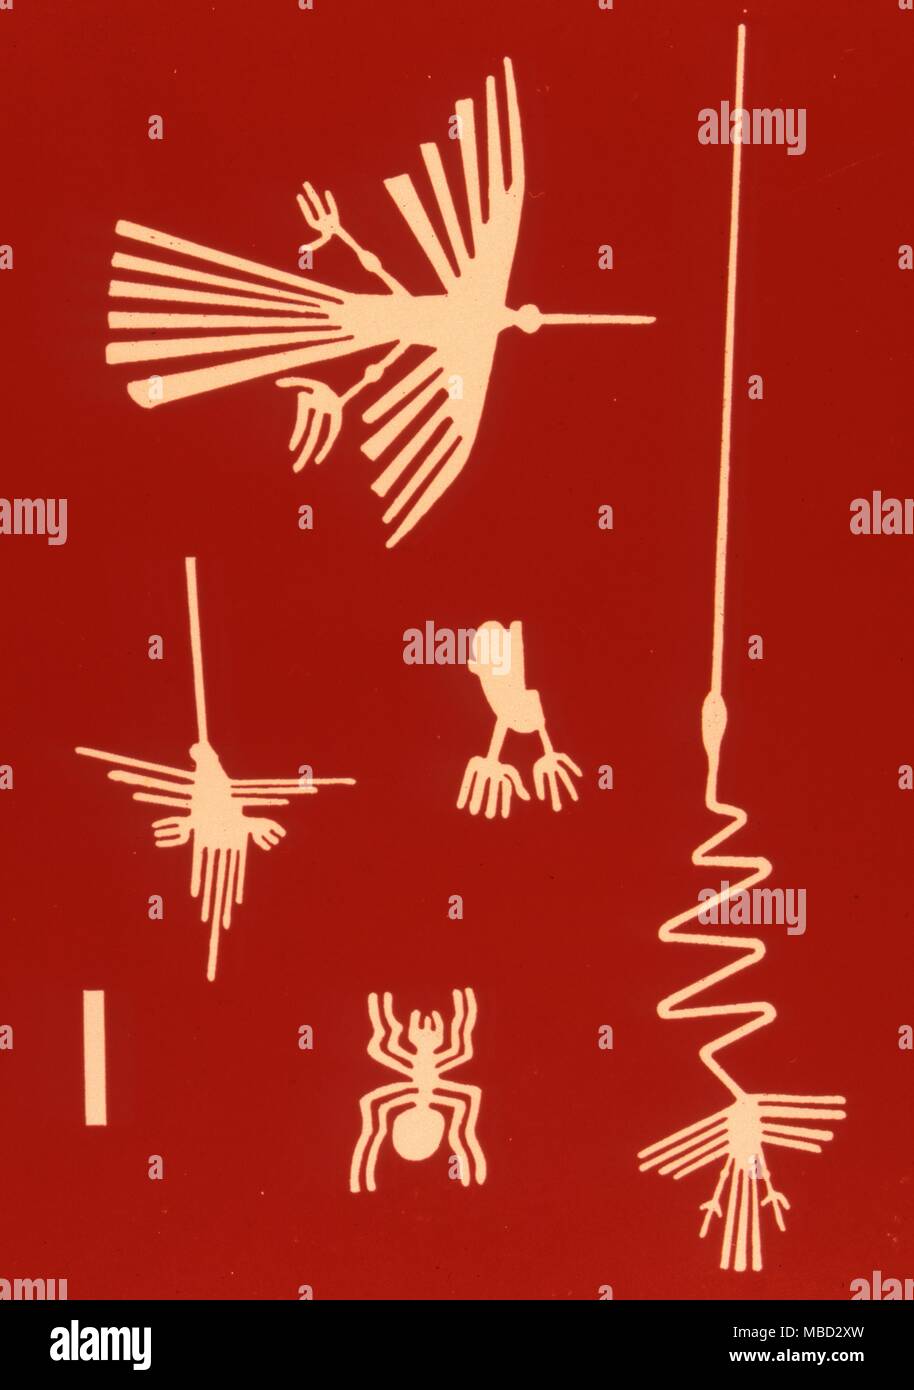 Lignes de Nazca. Le Pérou. Représentations des oiseaux et des animaux à l'échelle de 100 pieds, après le sable des dessins de la culture Nazca dans le désert péruvien. Banque D'Images